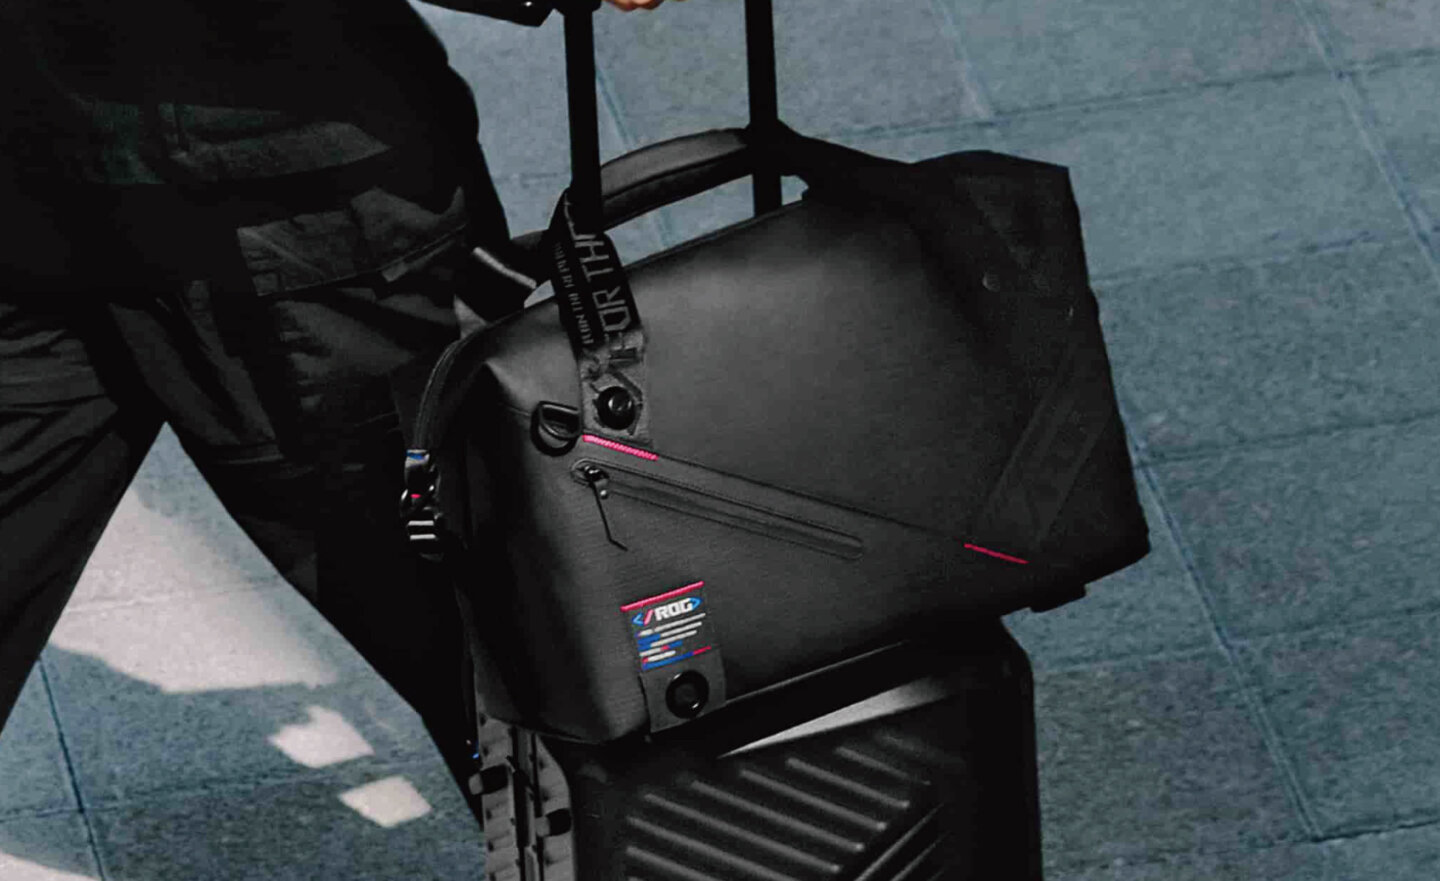 華碩打造一系列 ROG SLASH 登機箱、旅行袋